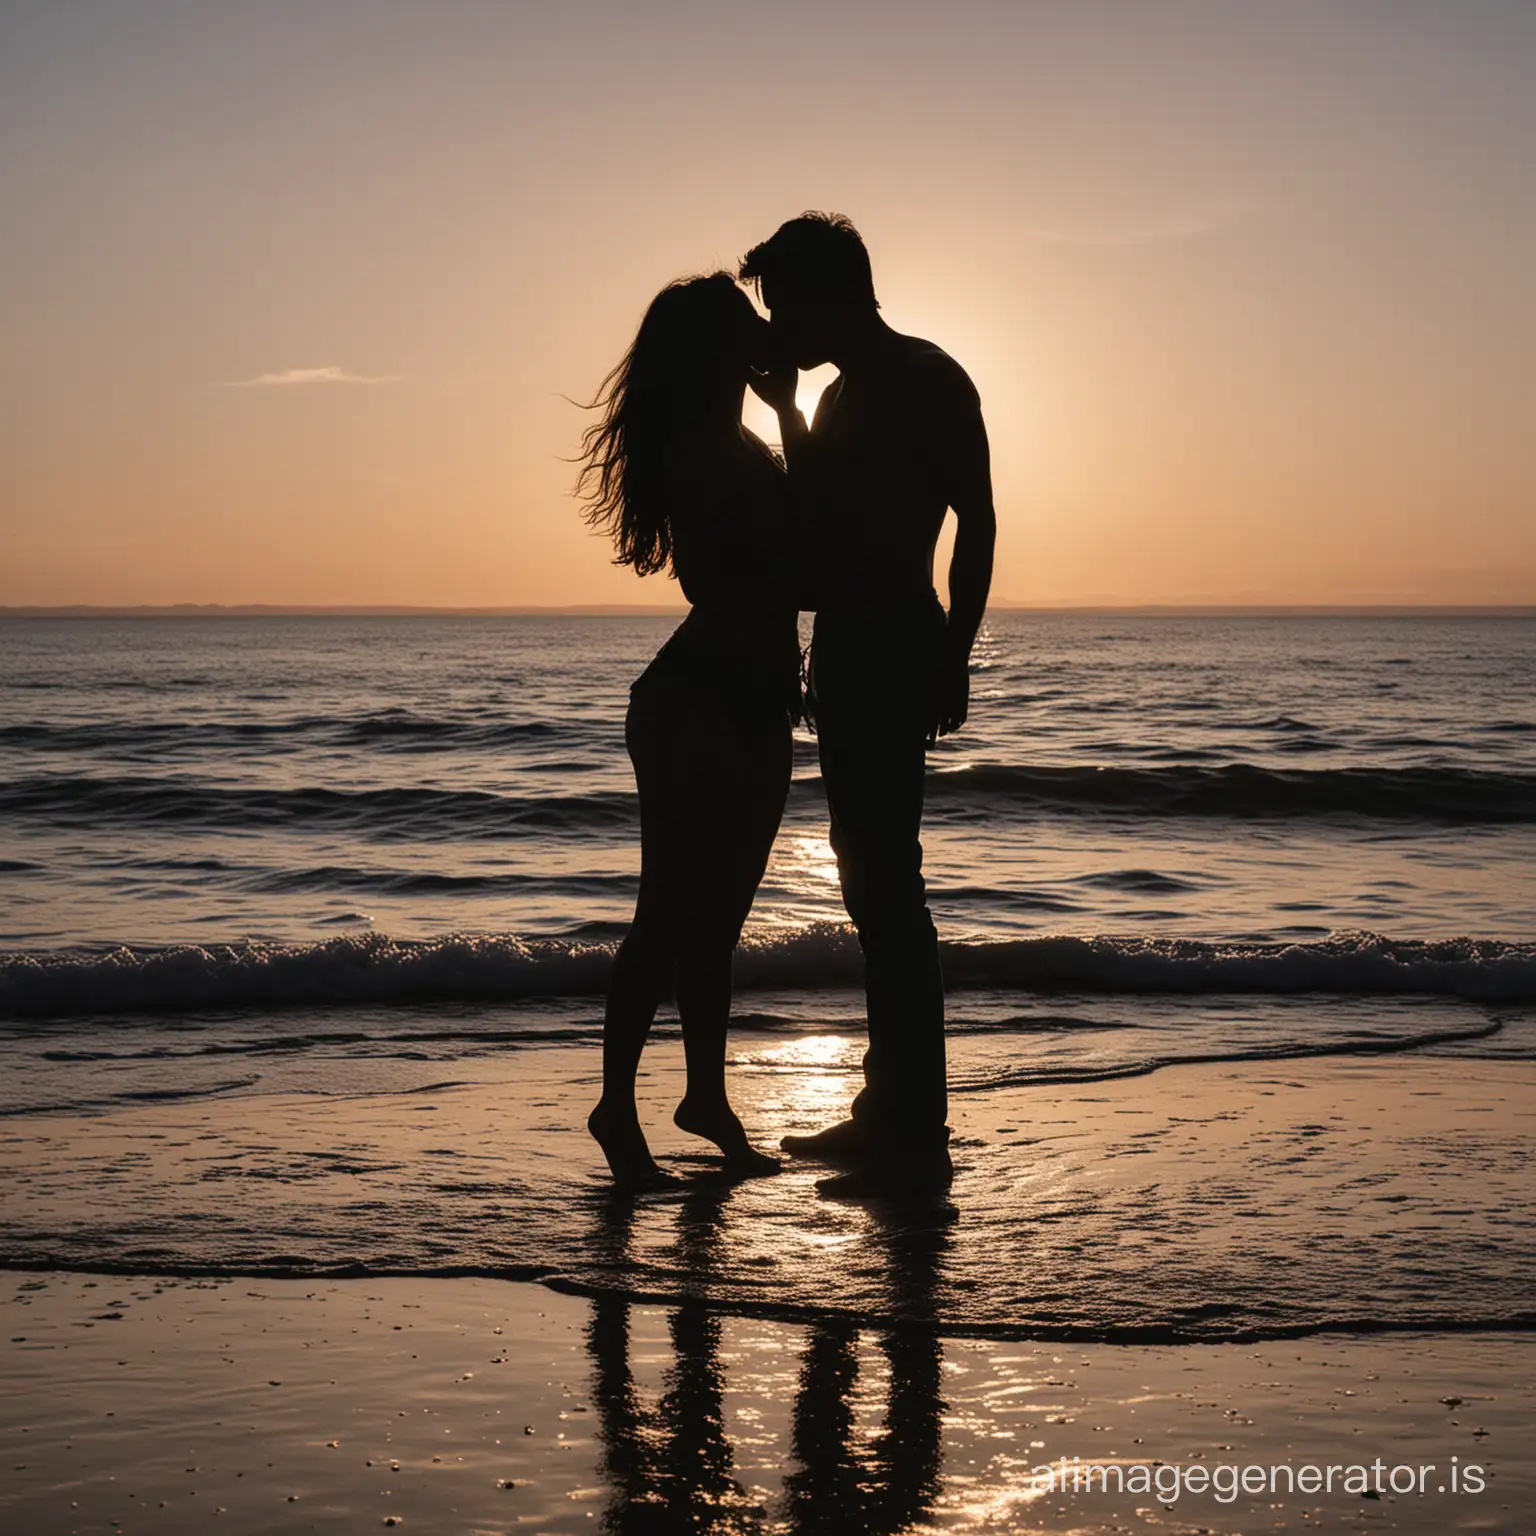 Romantic-Beachfront-Embrace-Sunset-Serenade-for-Lovers